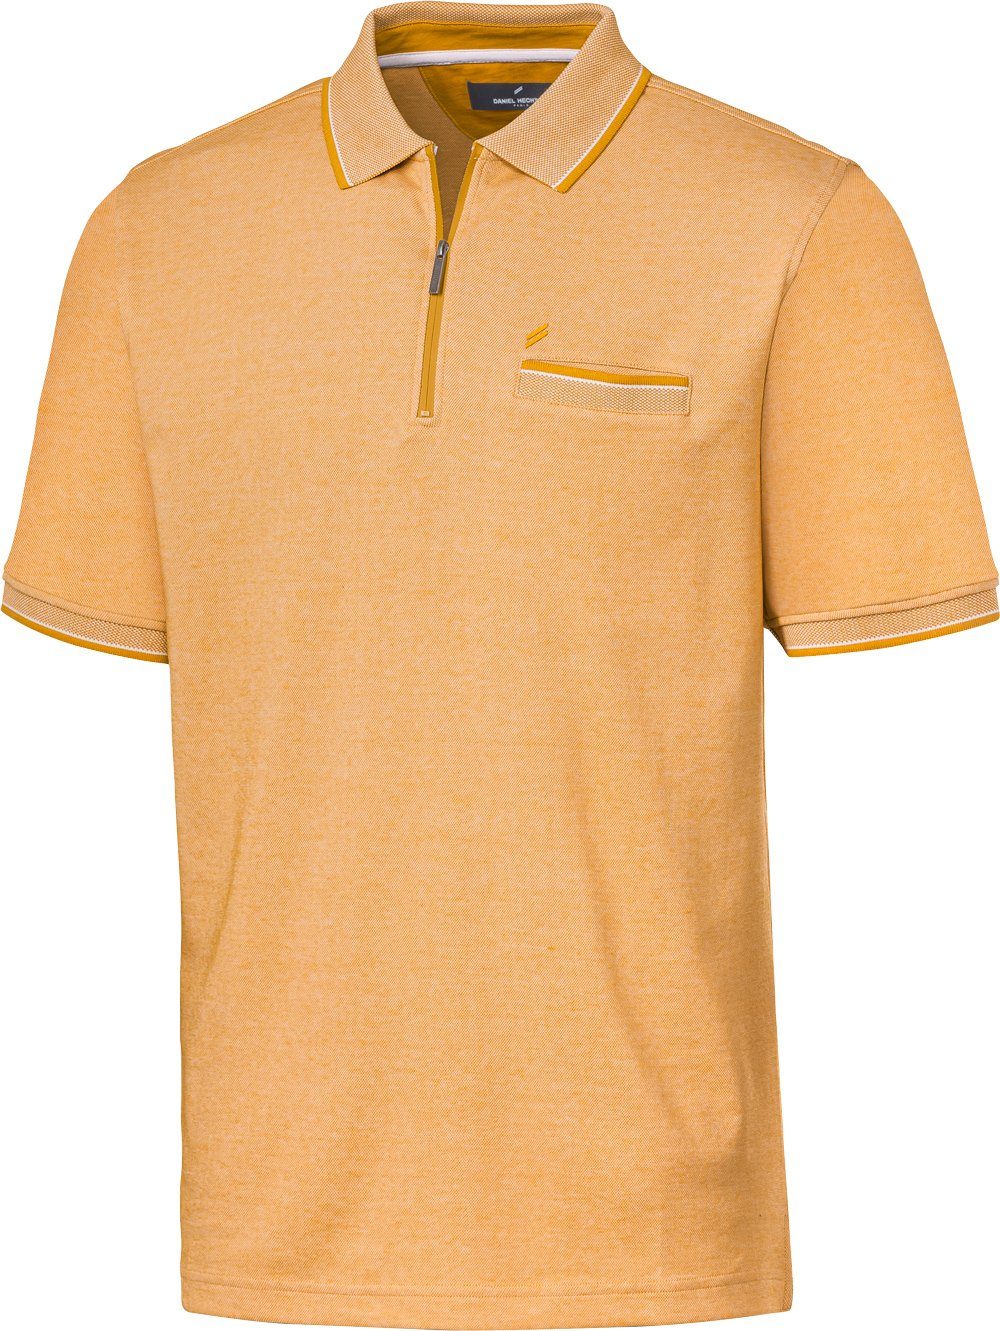 Daniel Hechter Poloshirt mit stimmigen Farbkontrasten und sportlichem Polo-Zipper bis zum Hals gelb